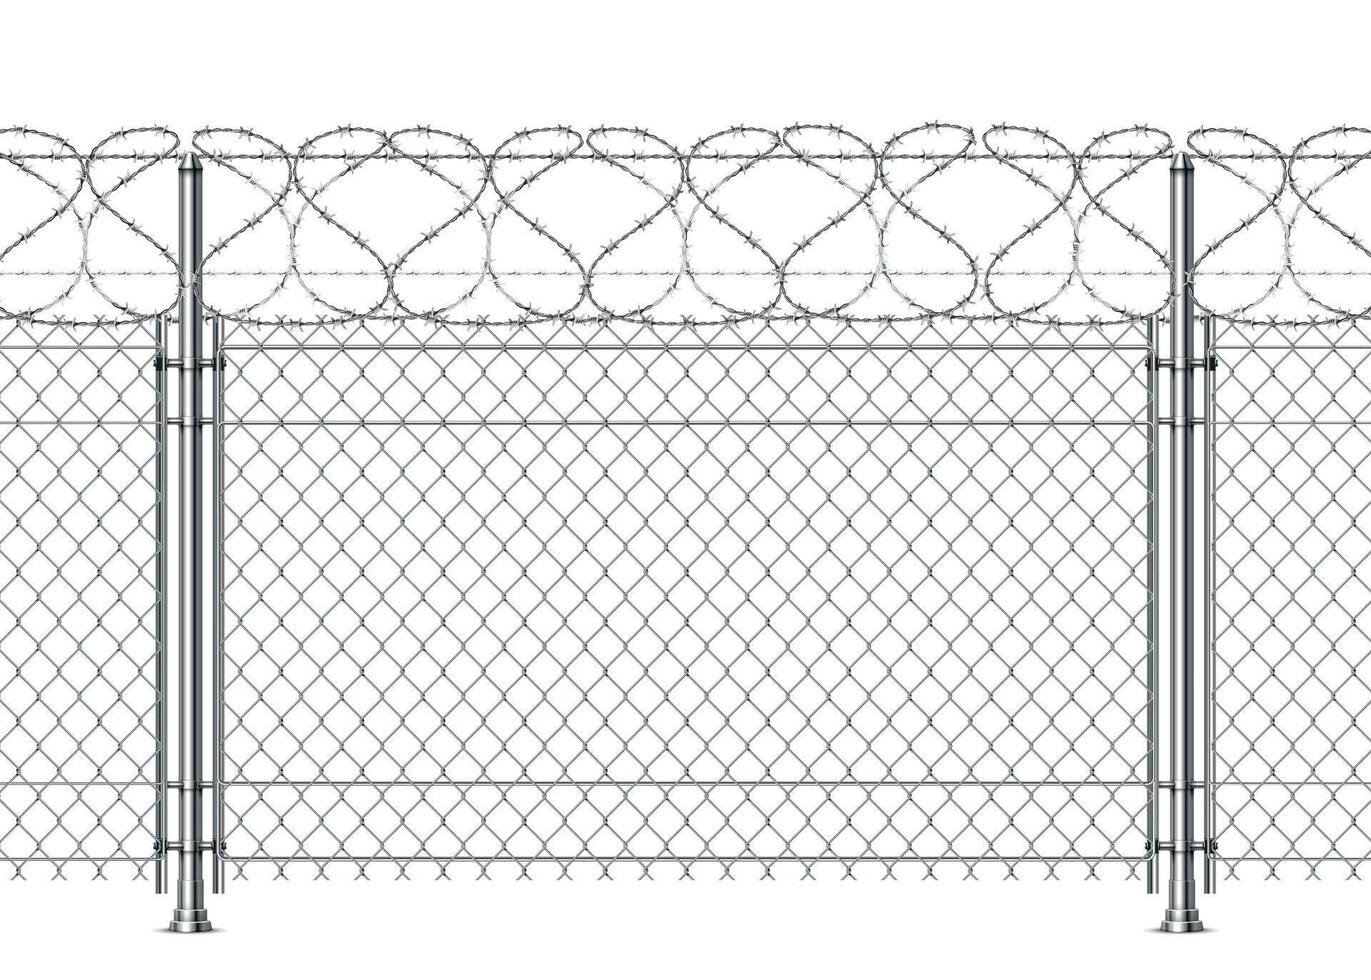 réaliste prison mur, chaîne clôture avec barbillon fil. 3d métal frontière Sécurité engrener avec fil de fer barbelé. guerre barrière construction vecteur Contexte